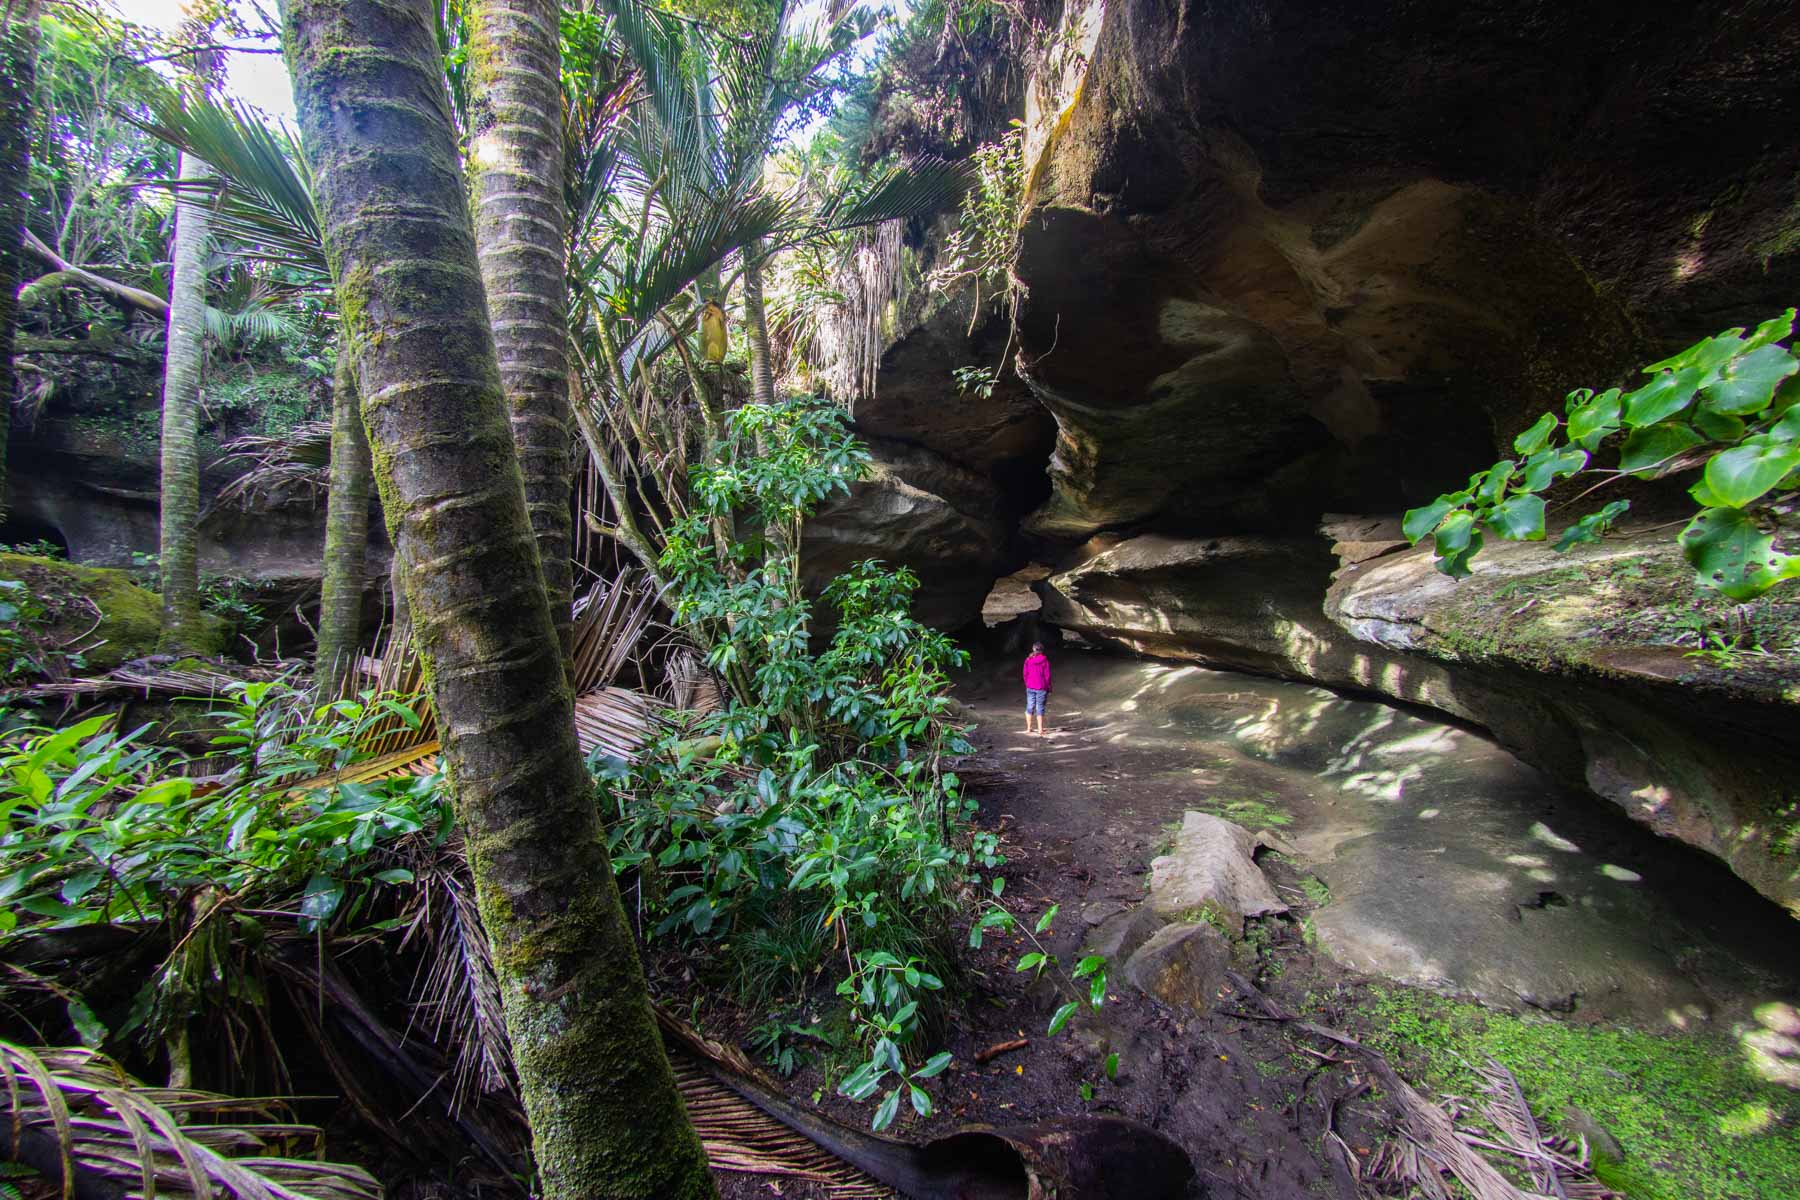 Debout sous une falaise, une femme observe la végétation luxuriante qui l’entoure.